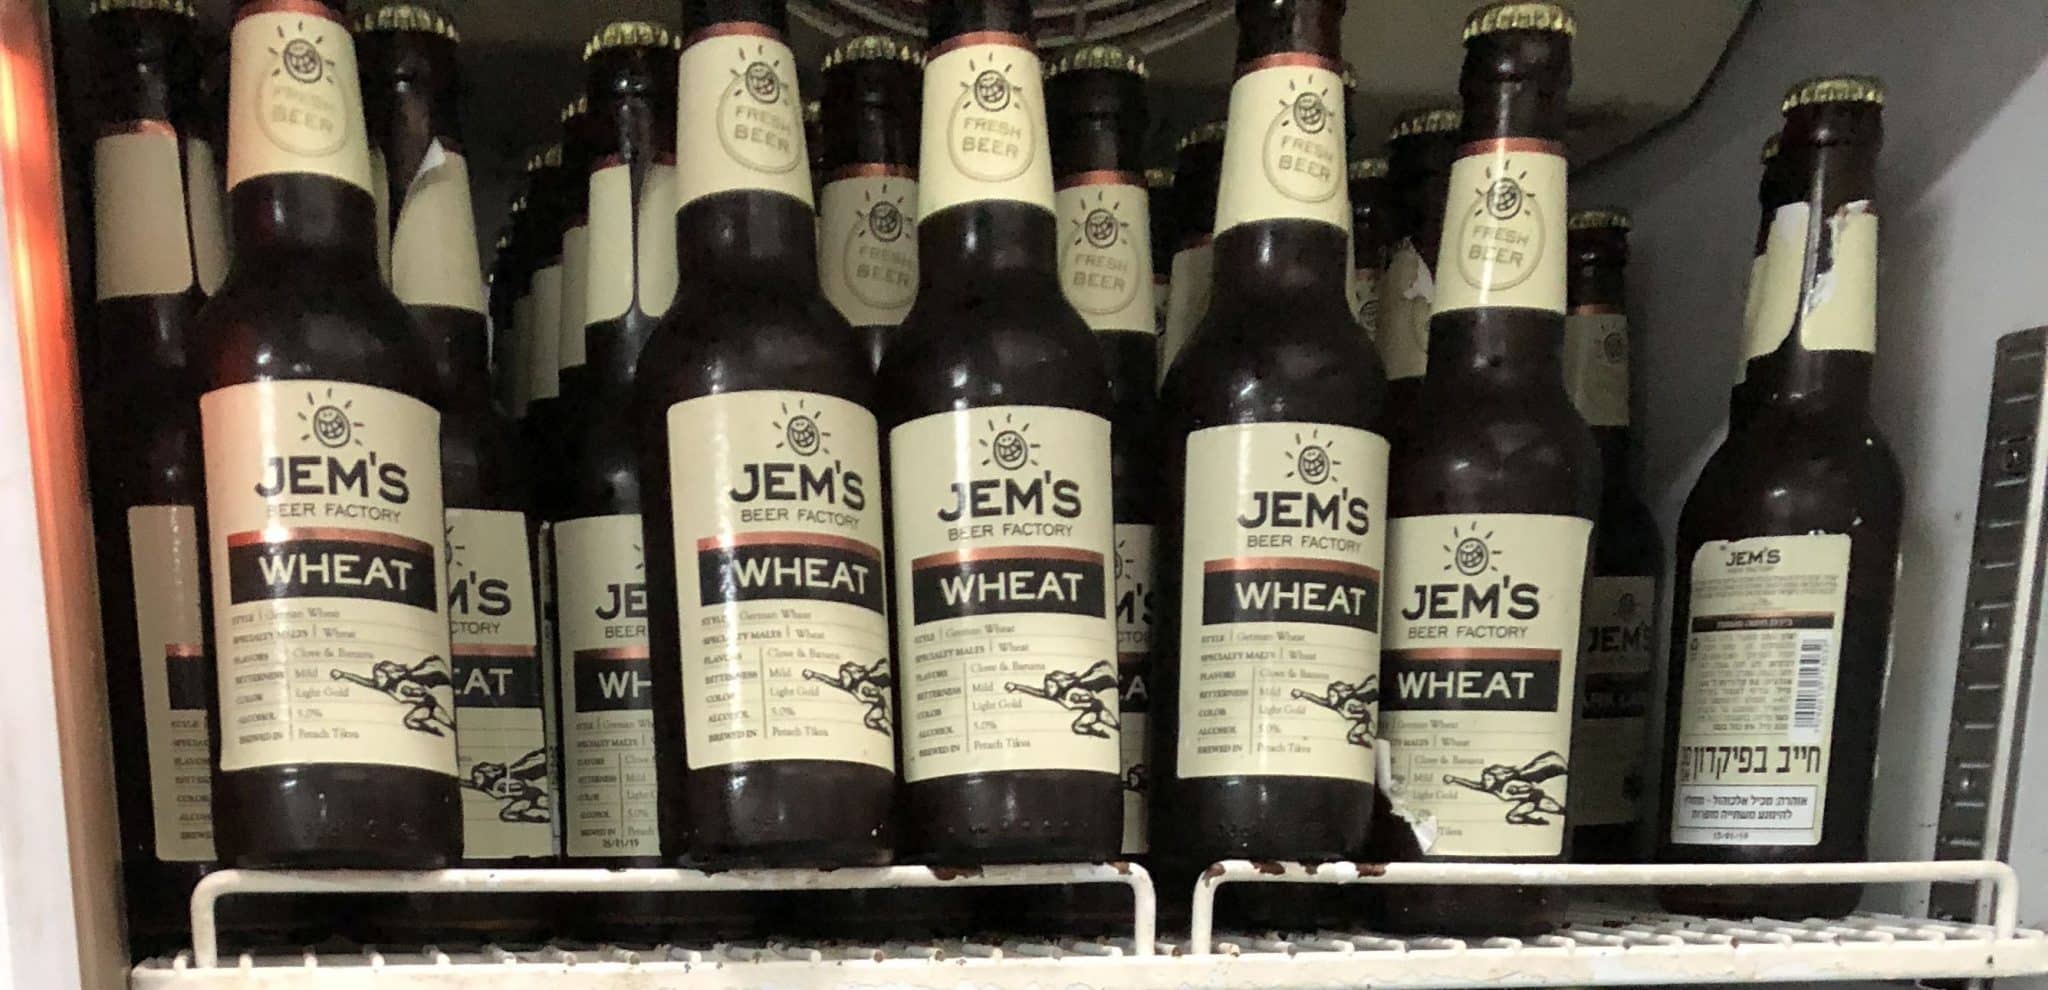 מפגשי העשרה עבור בעלי עסקים קטנים יתקיימו בסניפי Jem's Beer Factory ברחבי הארץ. צילום אמנון פאר